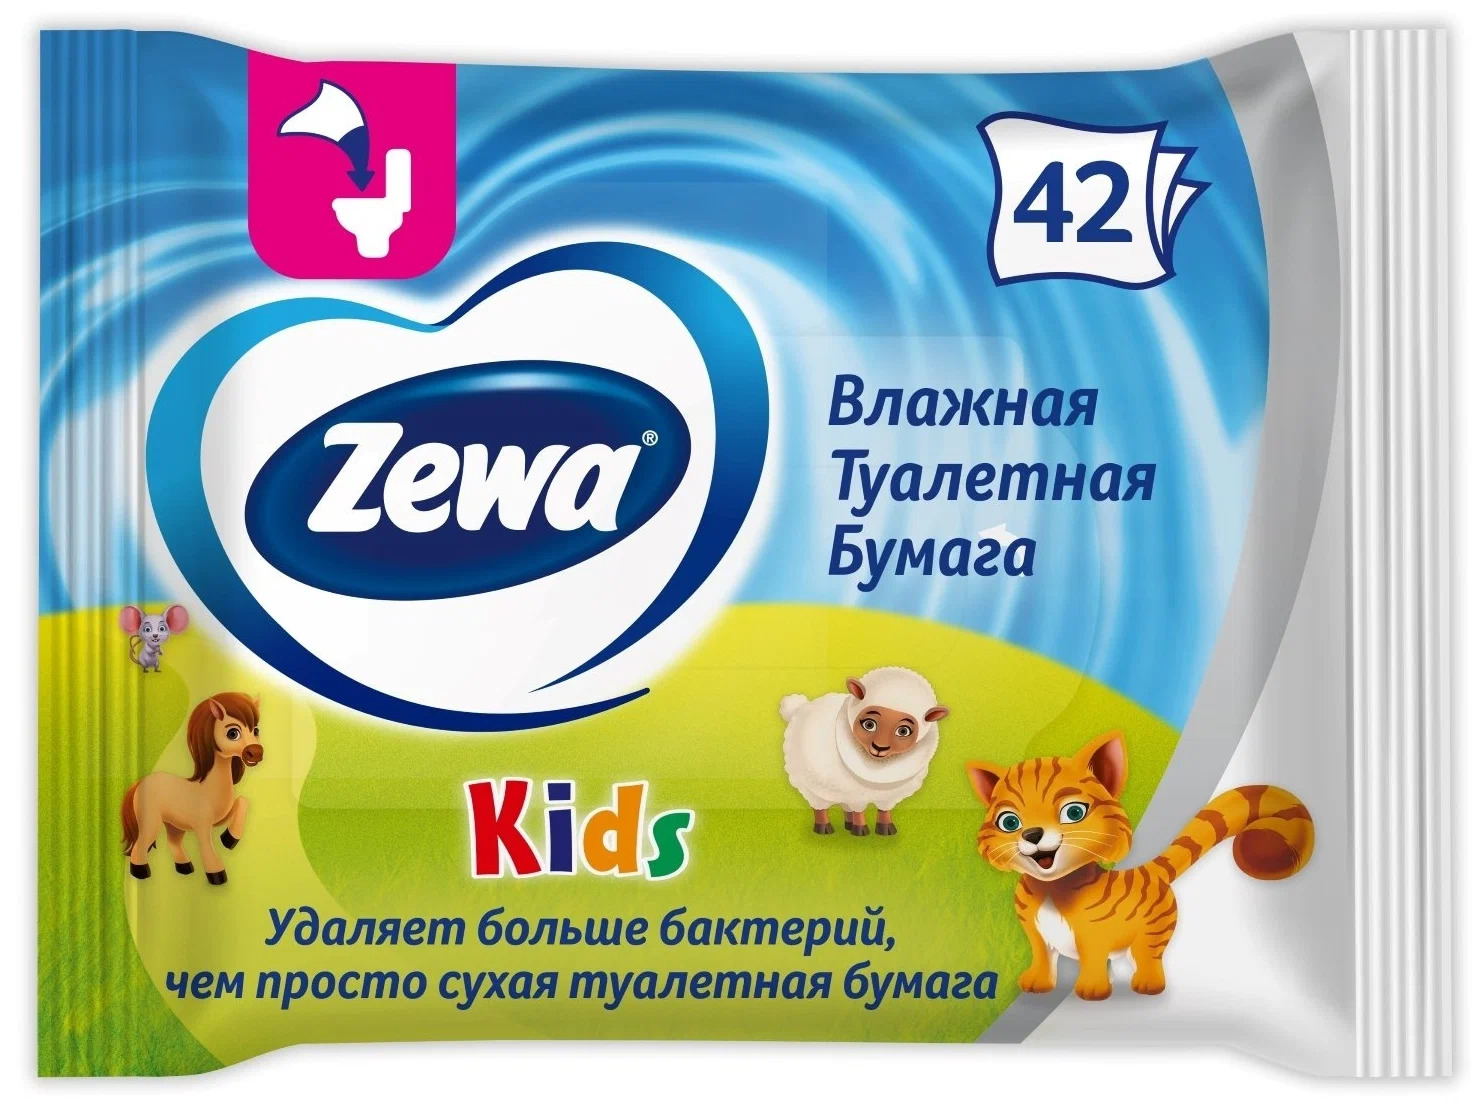 Бумага туалетная влажная Zewa Kids, 42 шт. бумага силиконизированная короны для выпечки 0 38 х 5 м